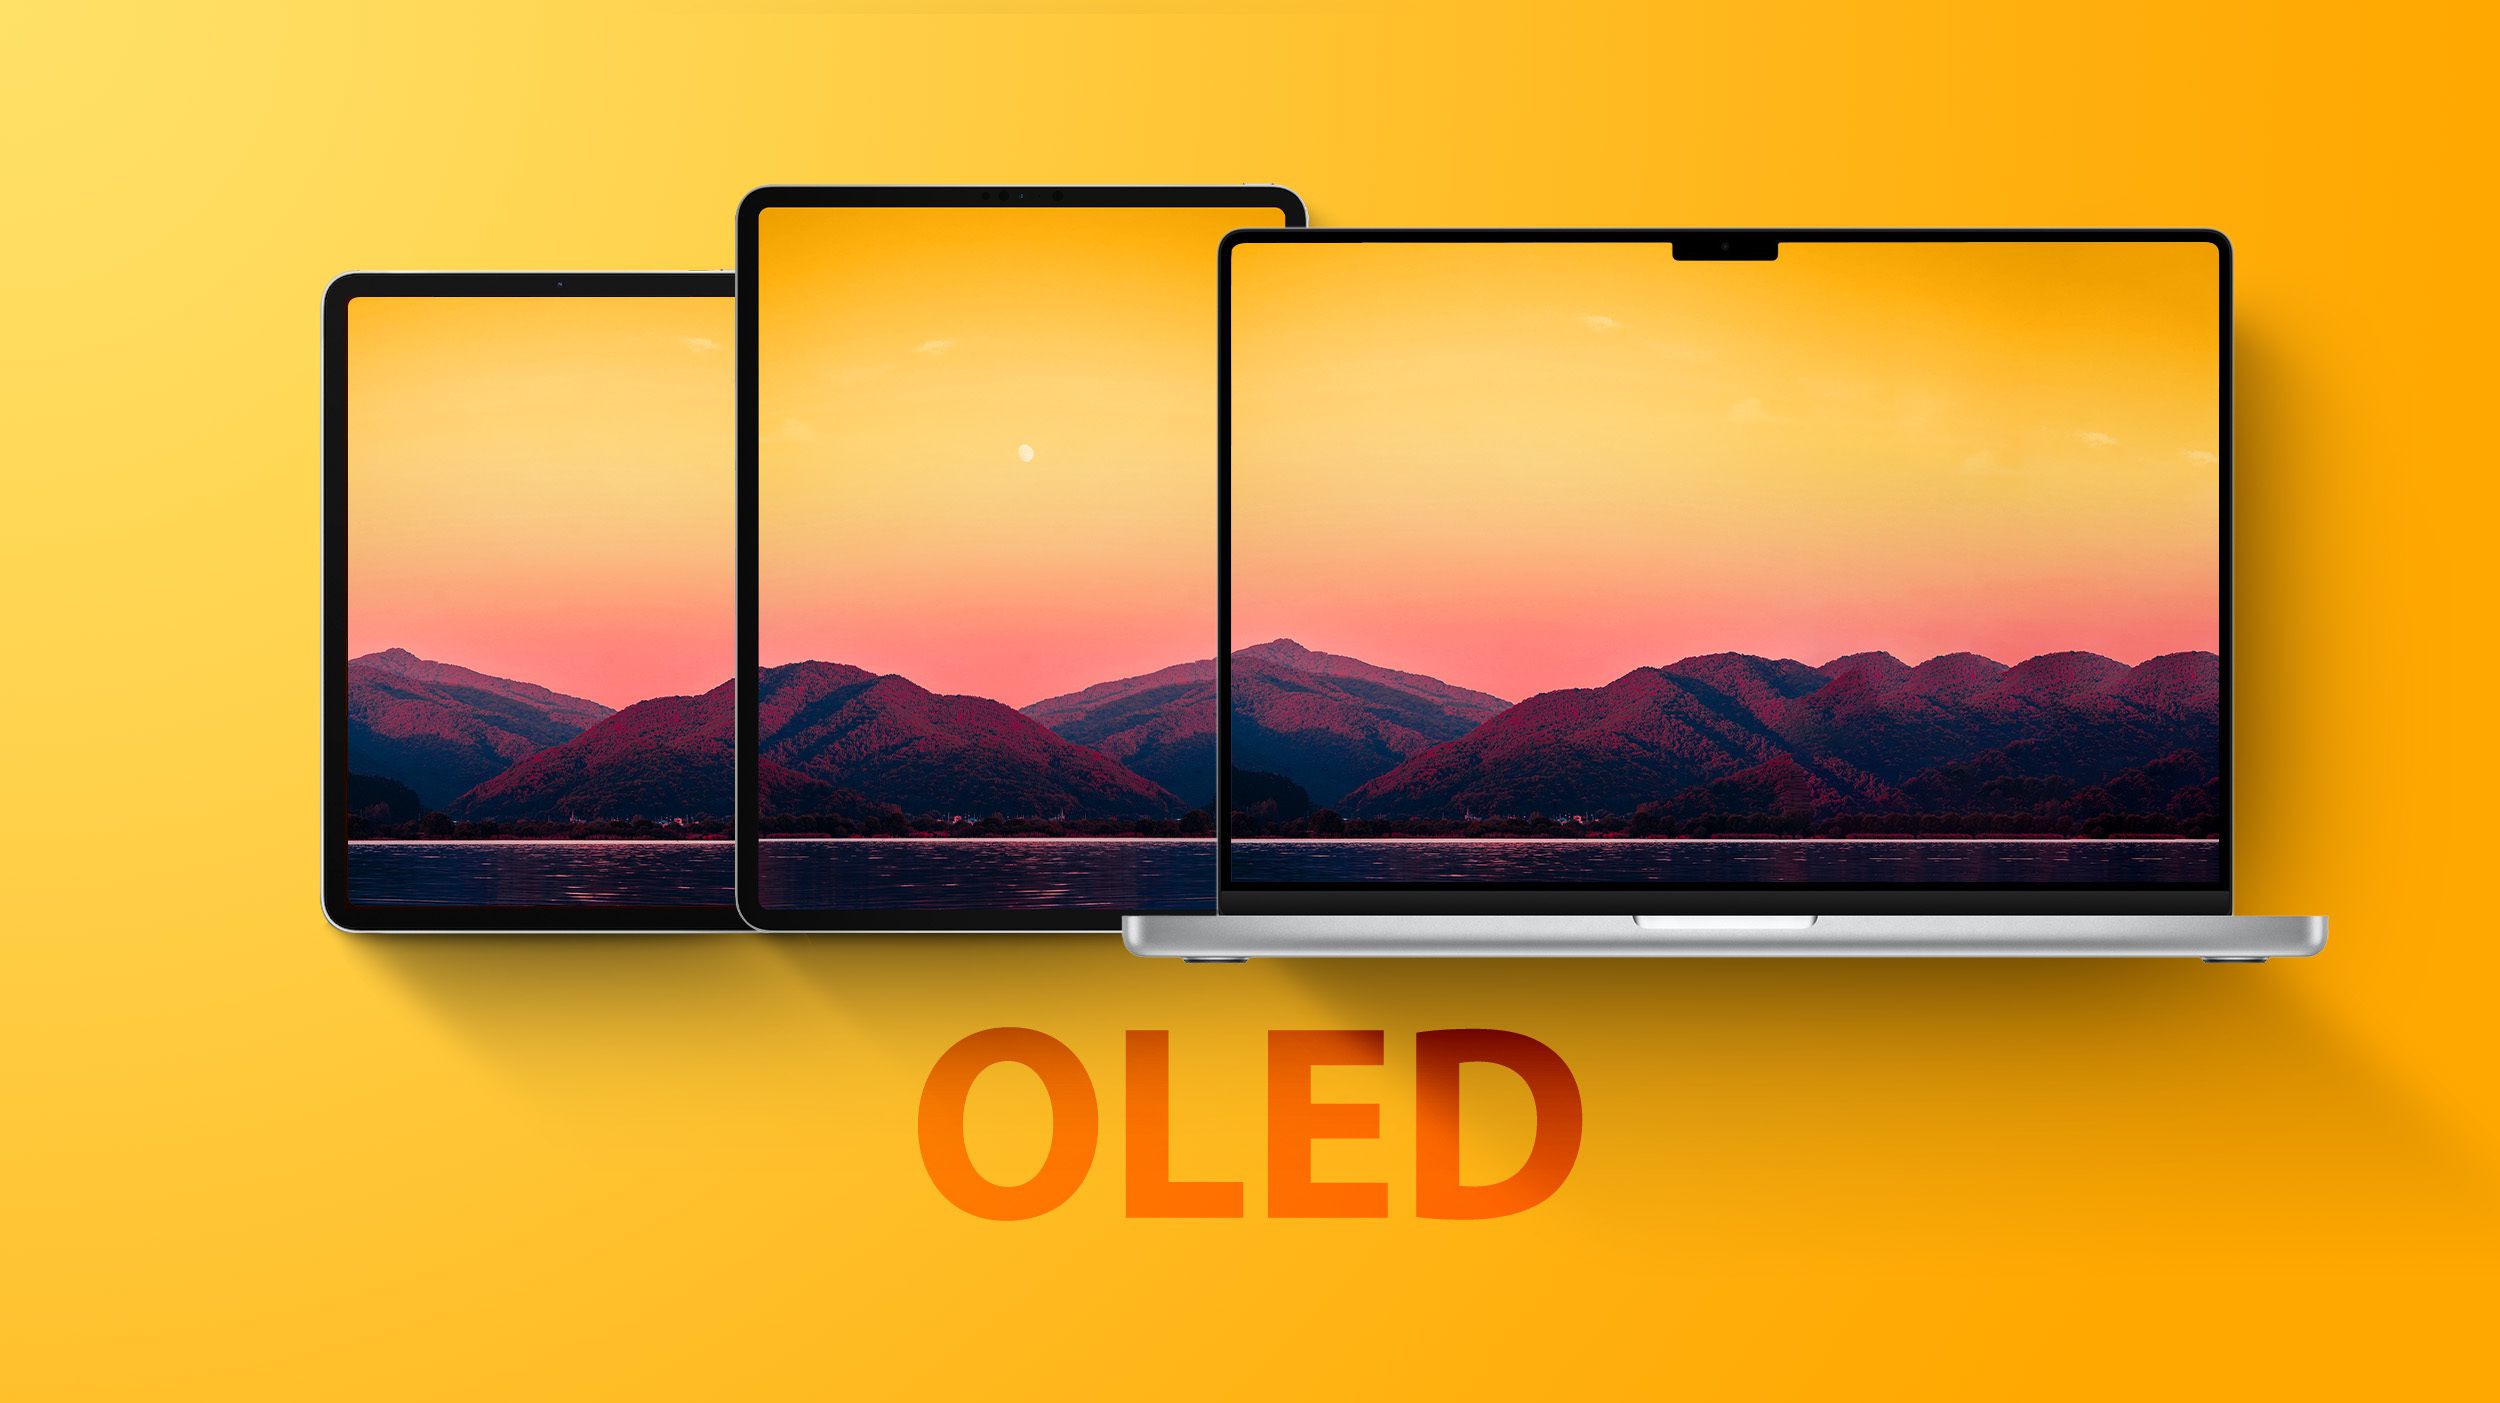 iPad Pro и MacBook Pro получат совершенно новые дисплеи совсем скоро